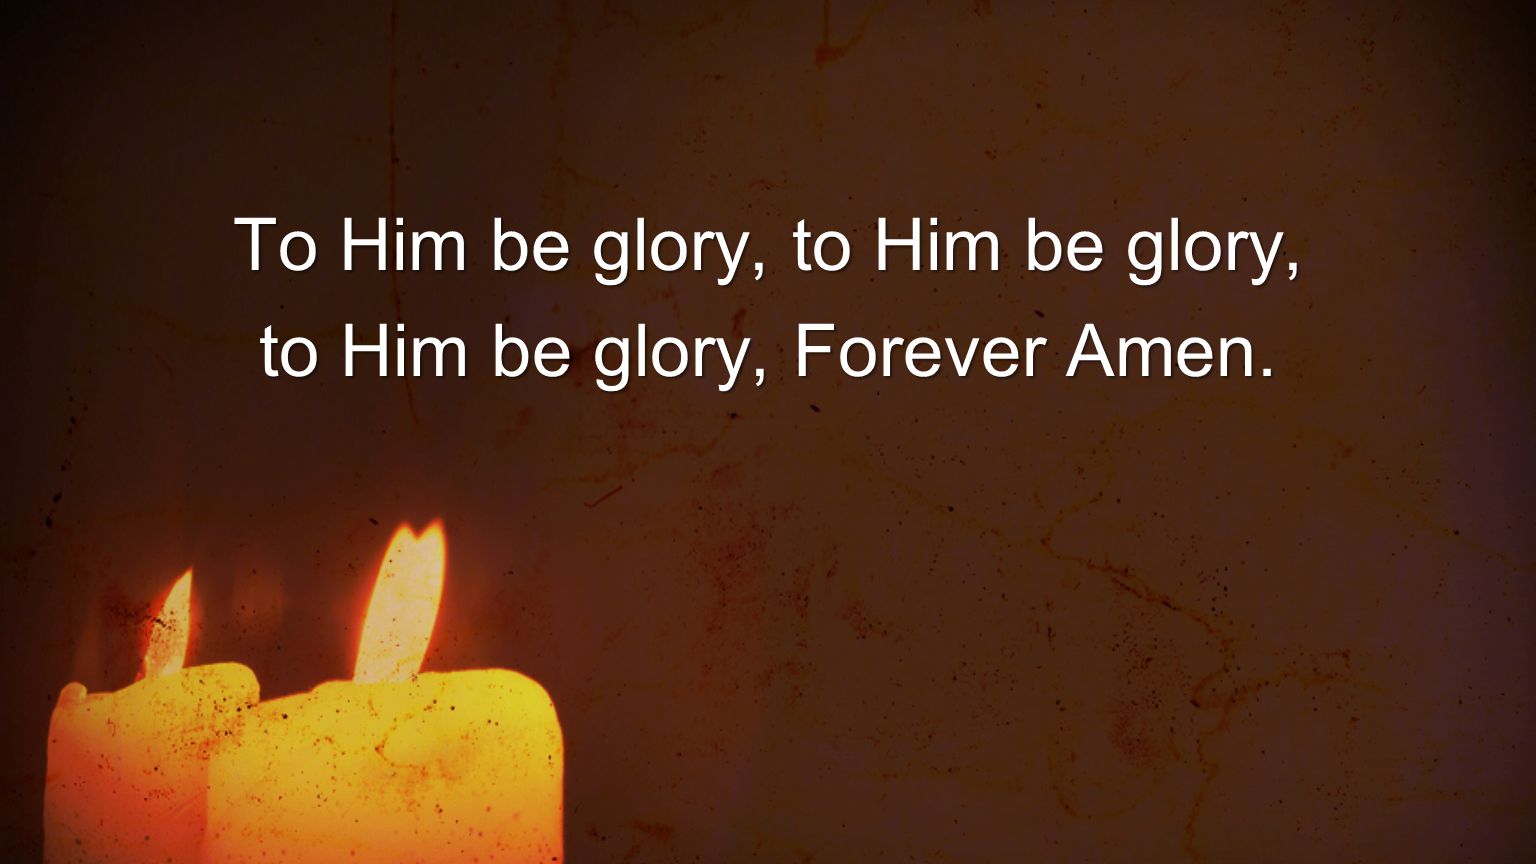 To Him be glory, to Him be glory, to Him be glory, Forever Amen.